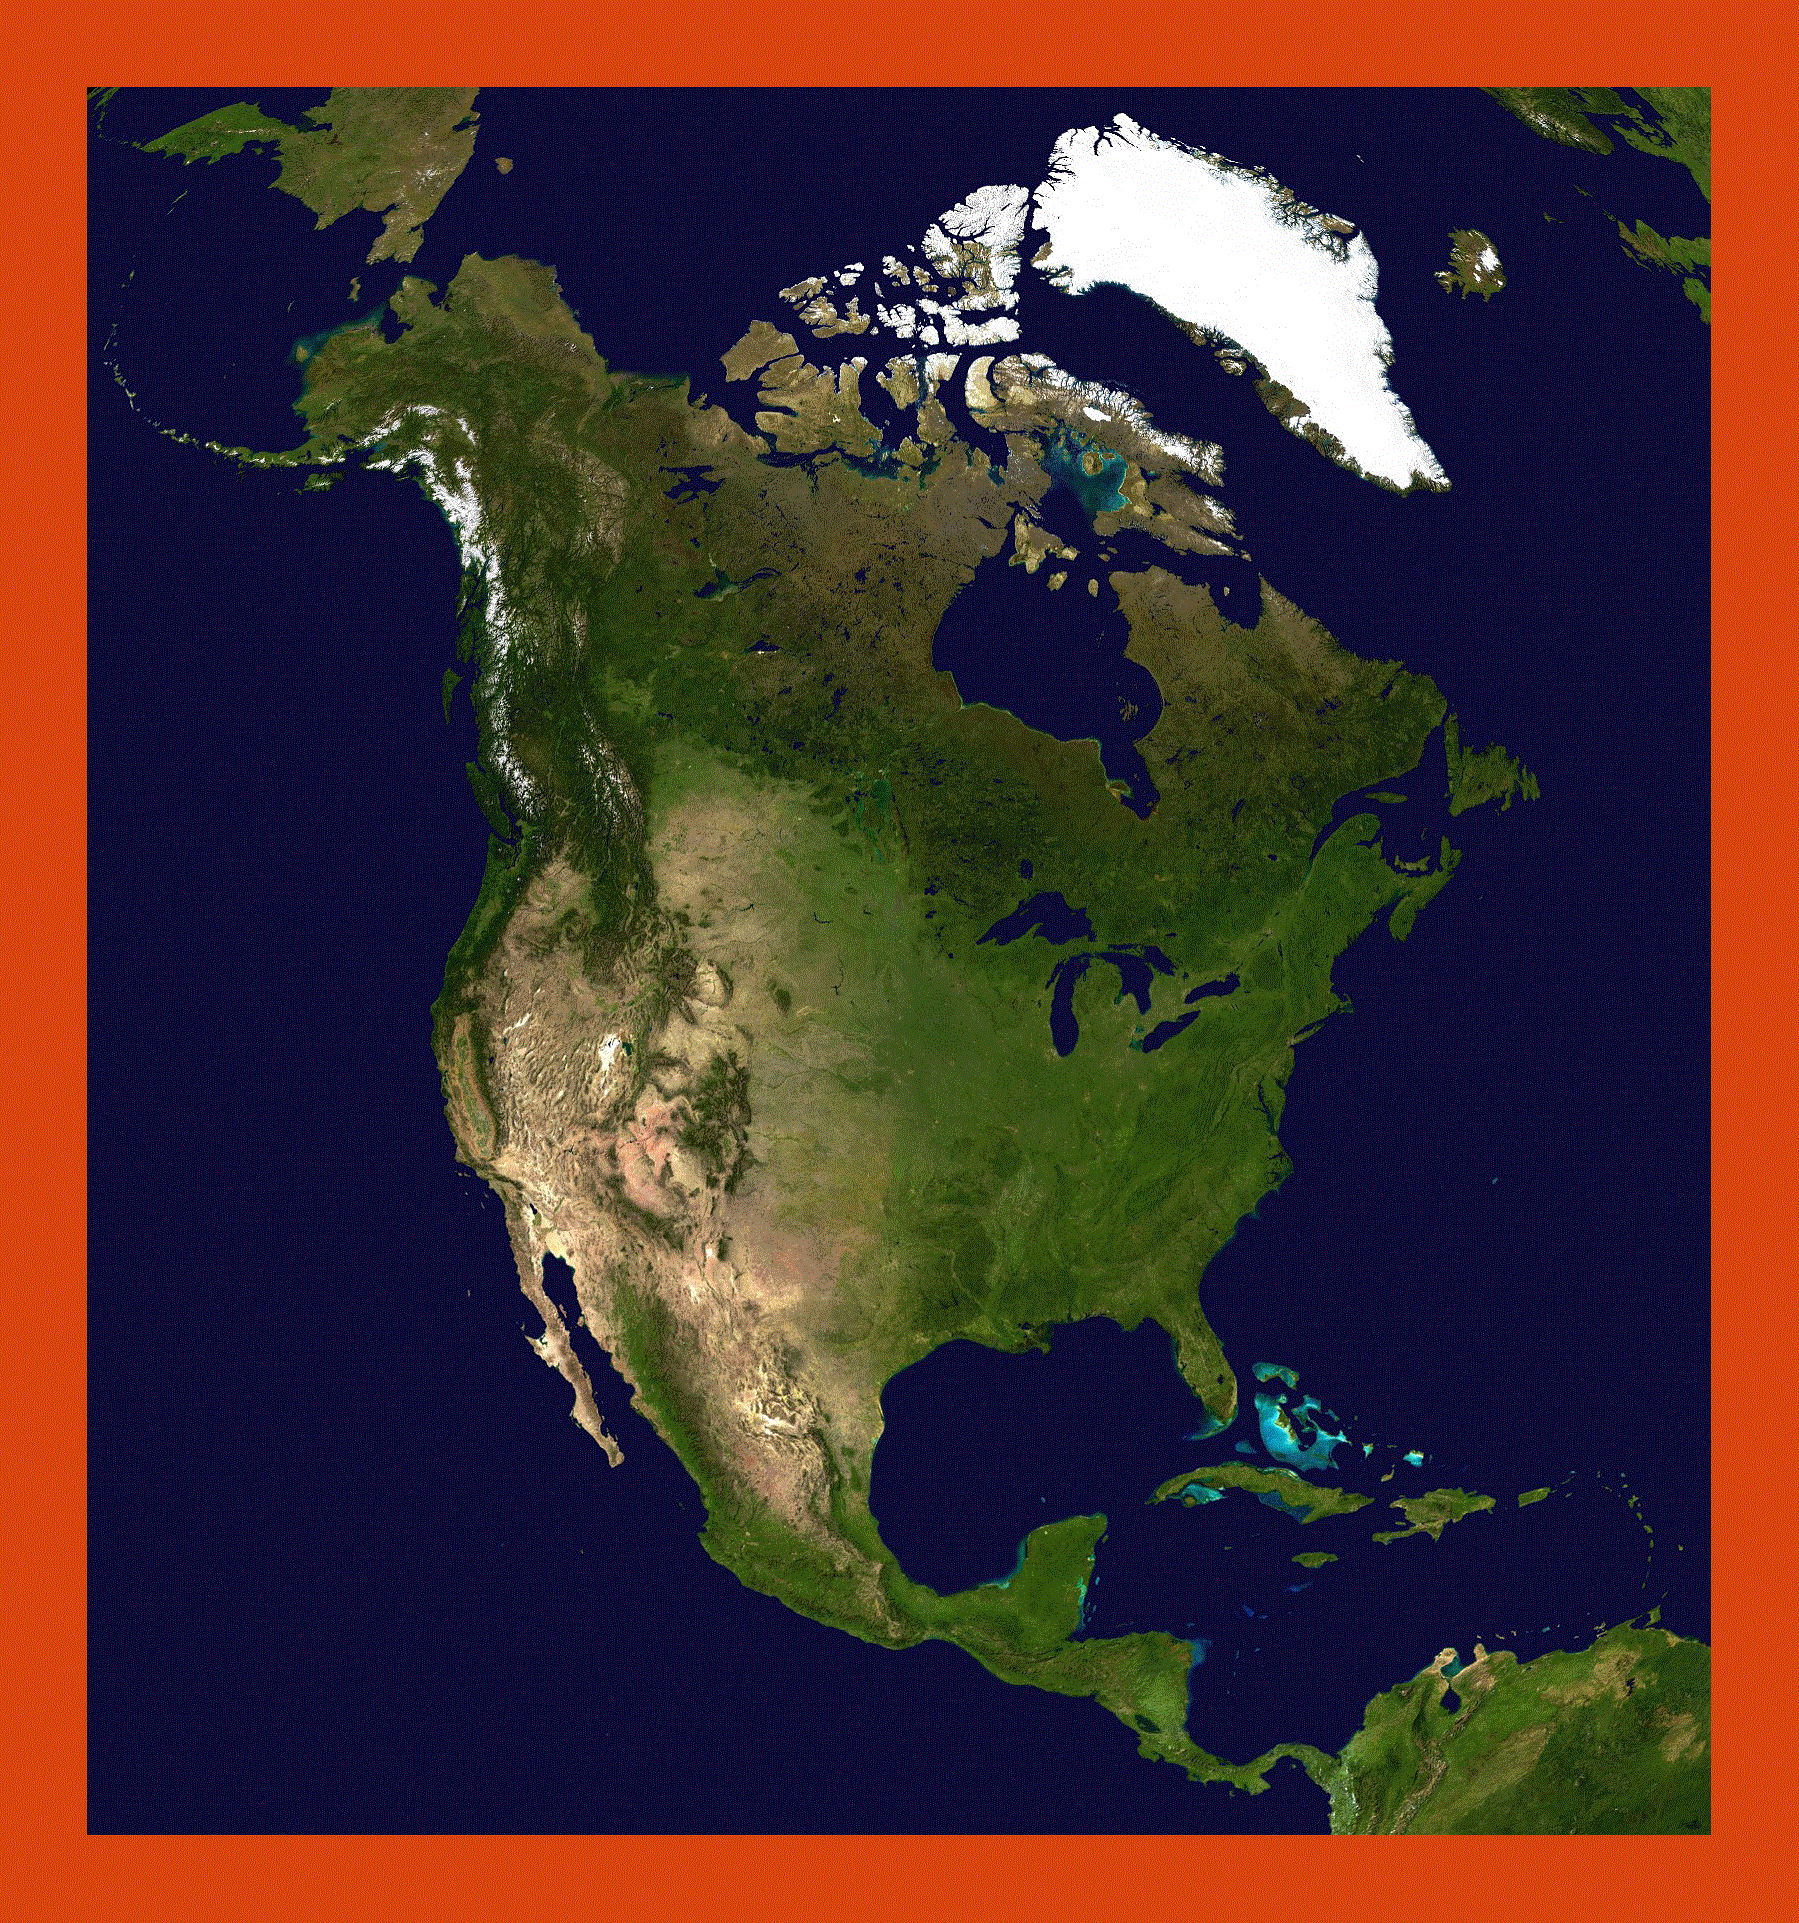 Северная Америка. Америка, материк. Континент Северная Америка. Территория Северной Америки. От материка северная америка ее отделяет